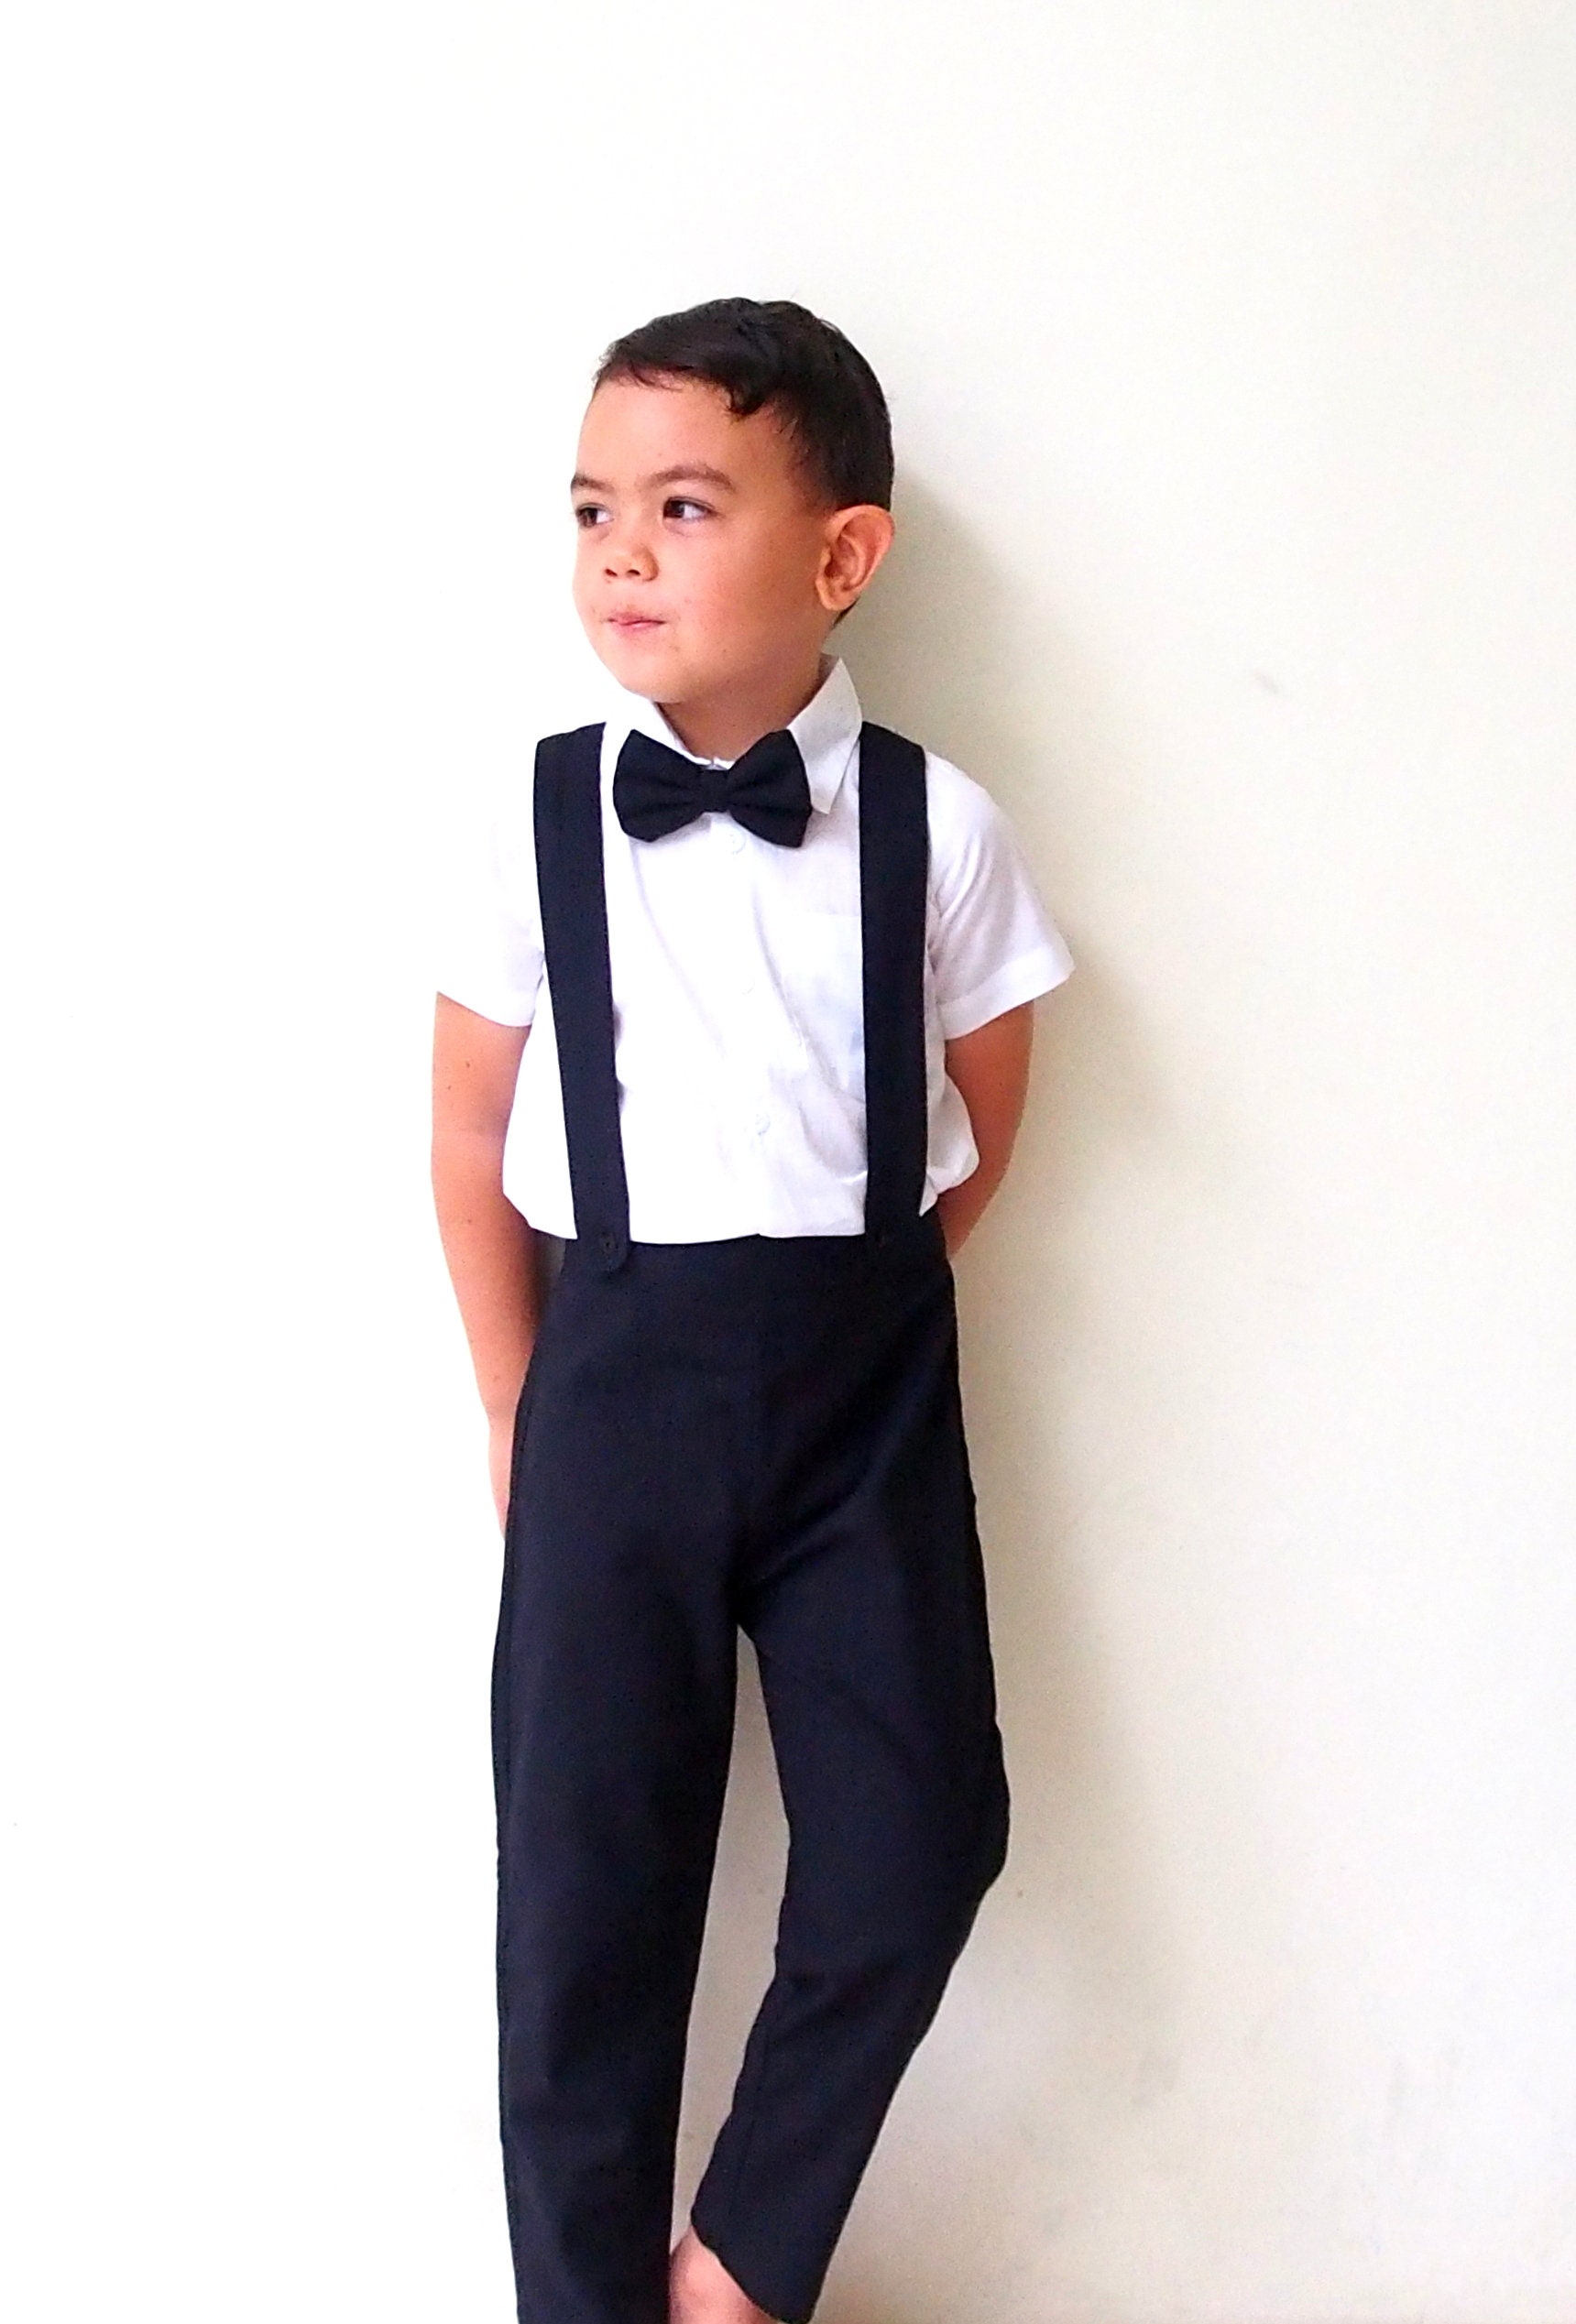 4 pcs. Boy Linen Suit Black Boy Suit Christening Outfit | Etsy